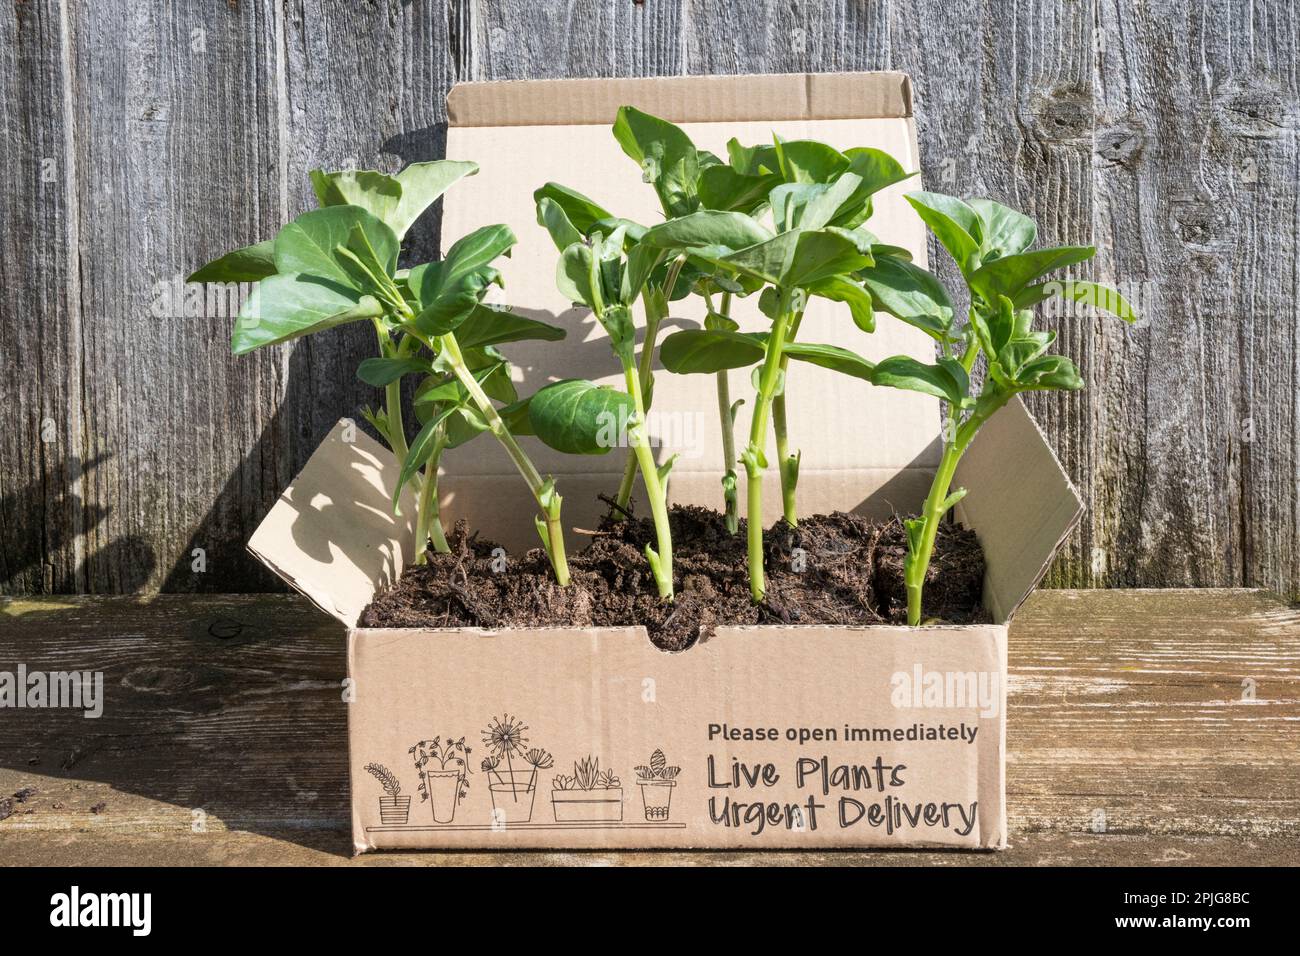 Grandes plantes de haricots poussant dans la boîte marquée plantes vivantes livraison urgente. Plantes par post concept. Banque D'Images